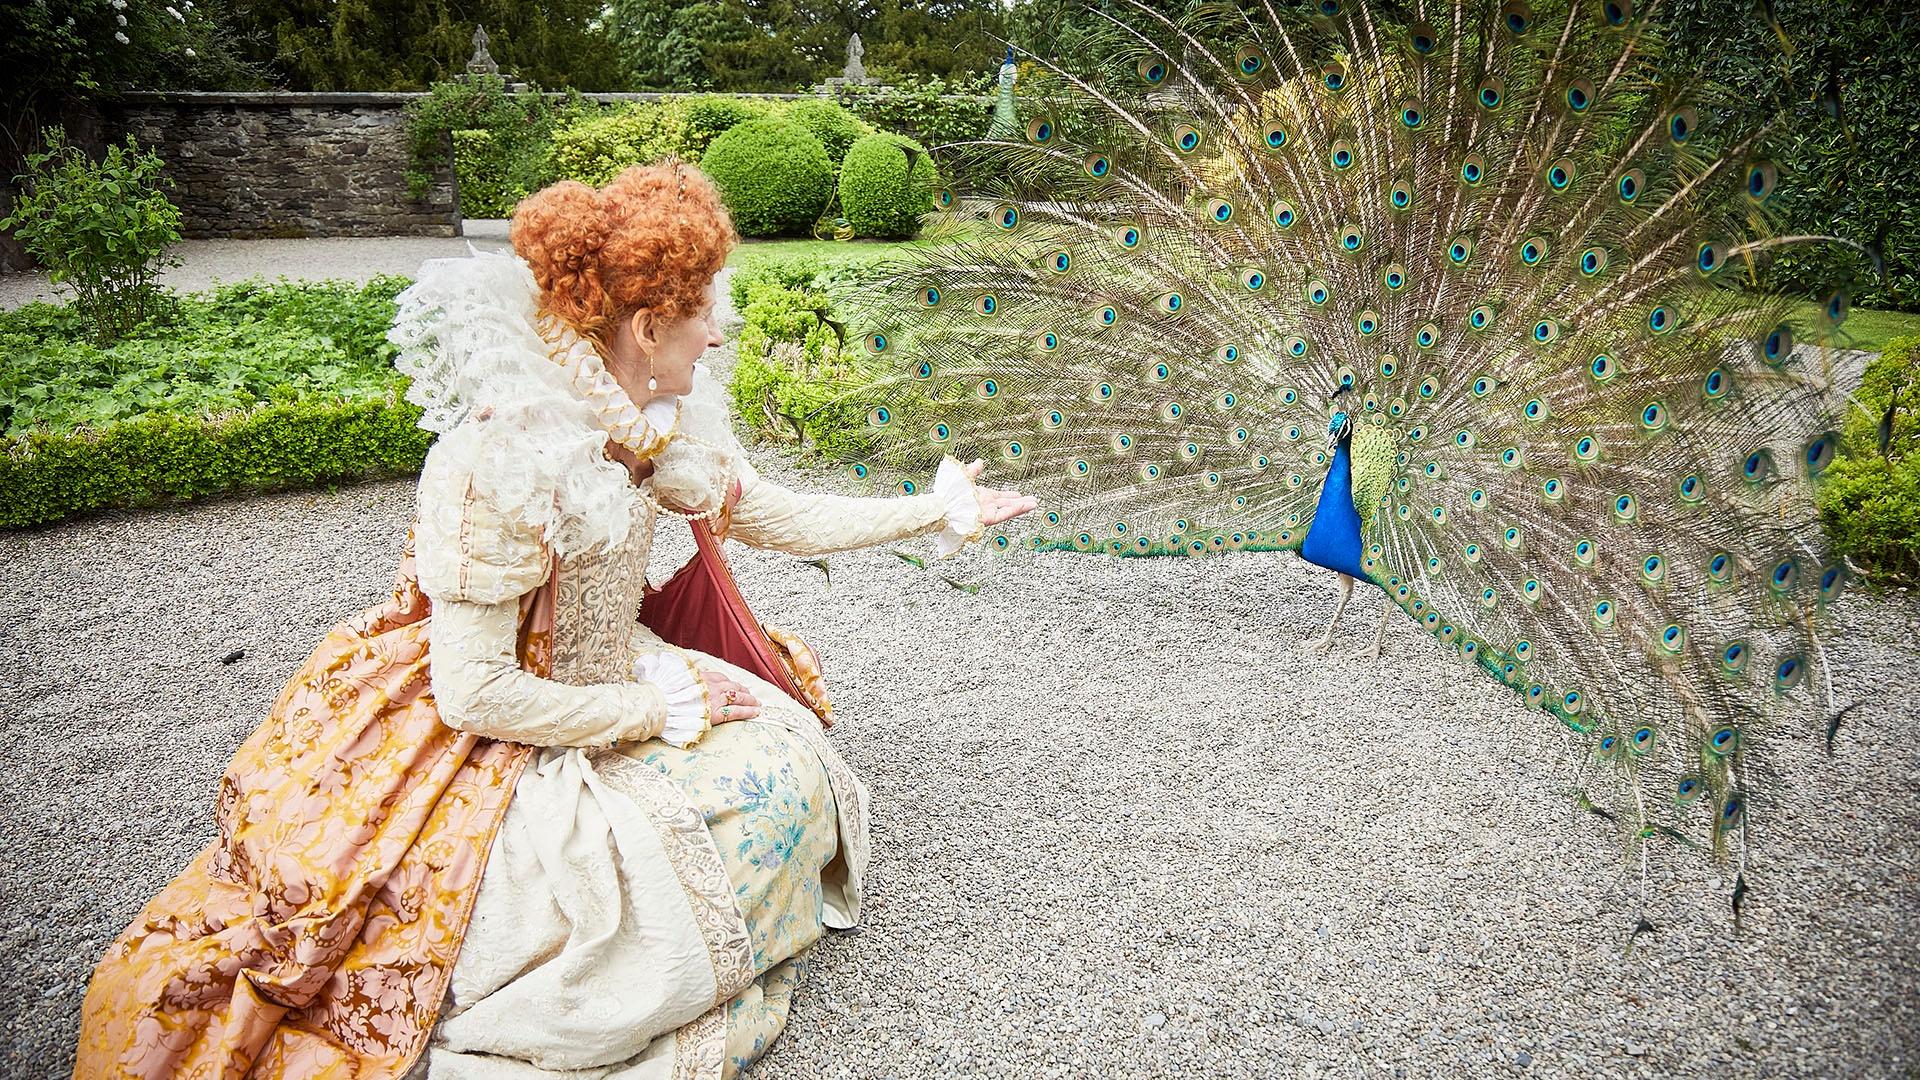 Queen Elizabeth I feeding her peacocks.